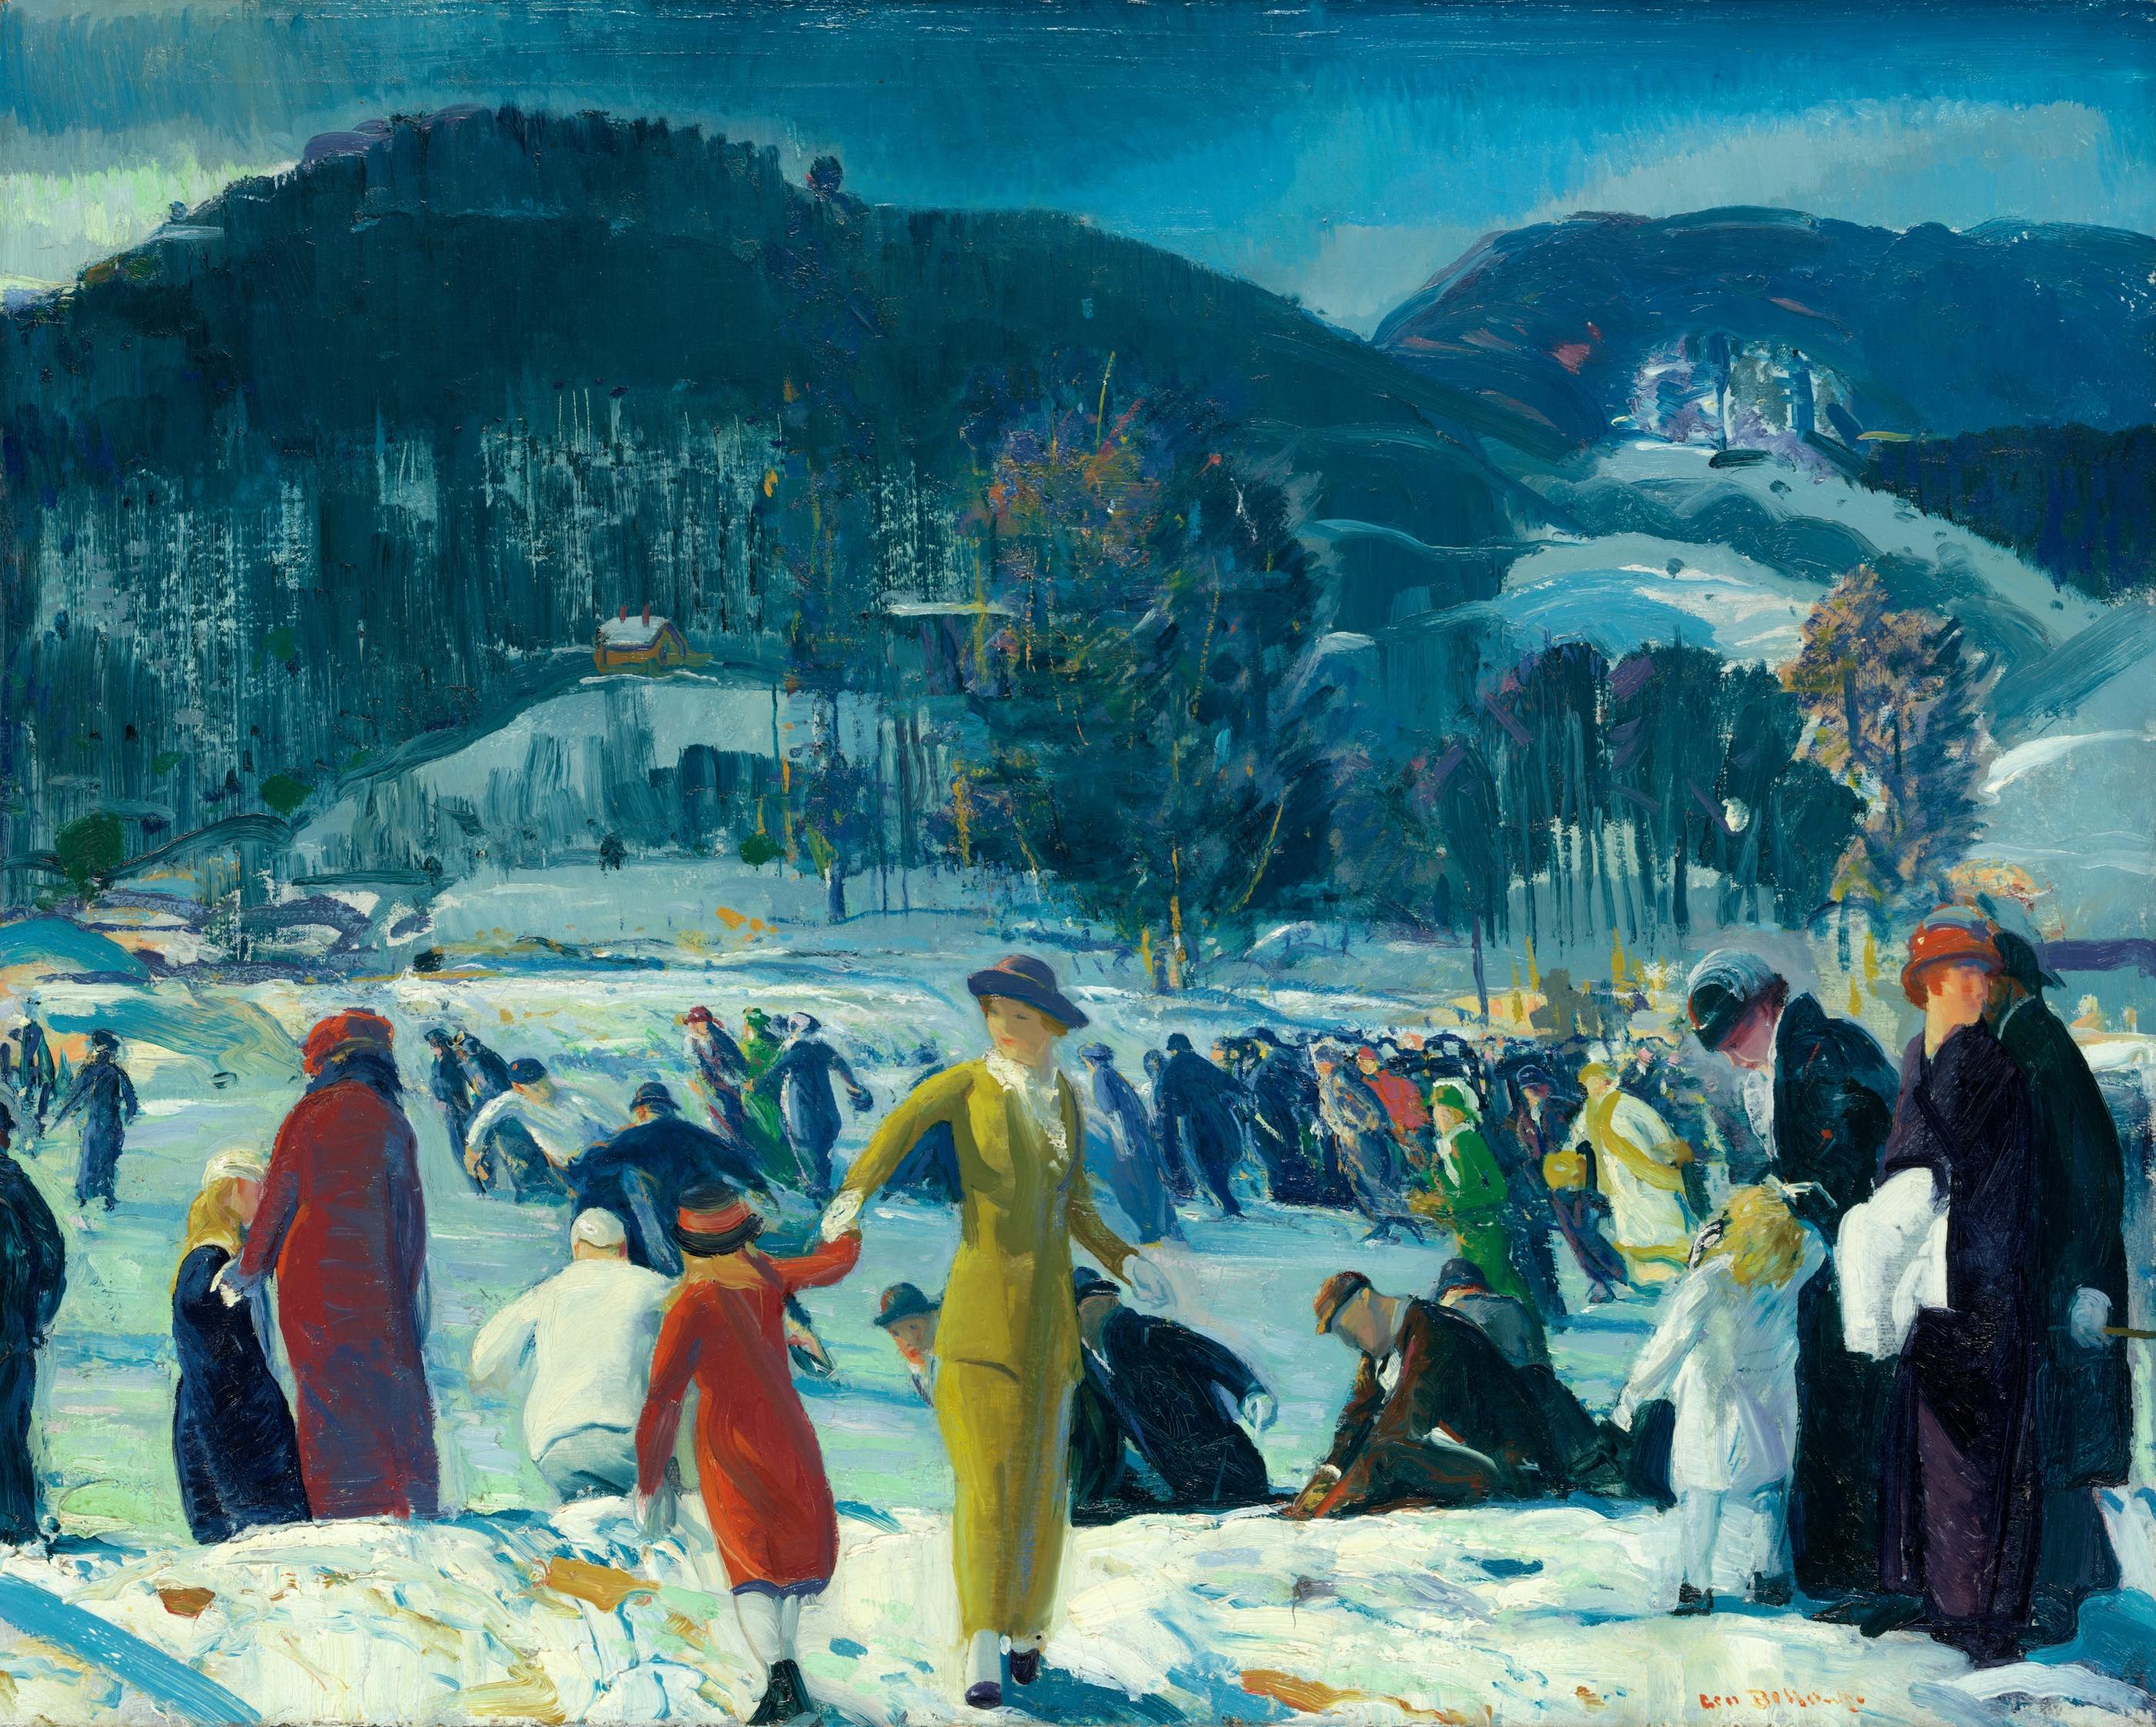 冬の愛 by George Bellows - 1914年 - 81.6 × 101.6 cm 